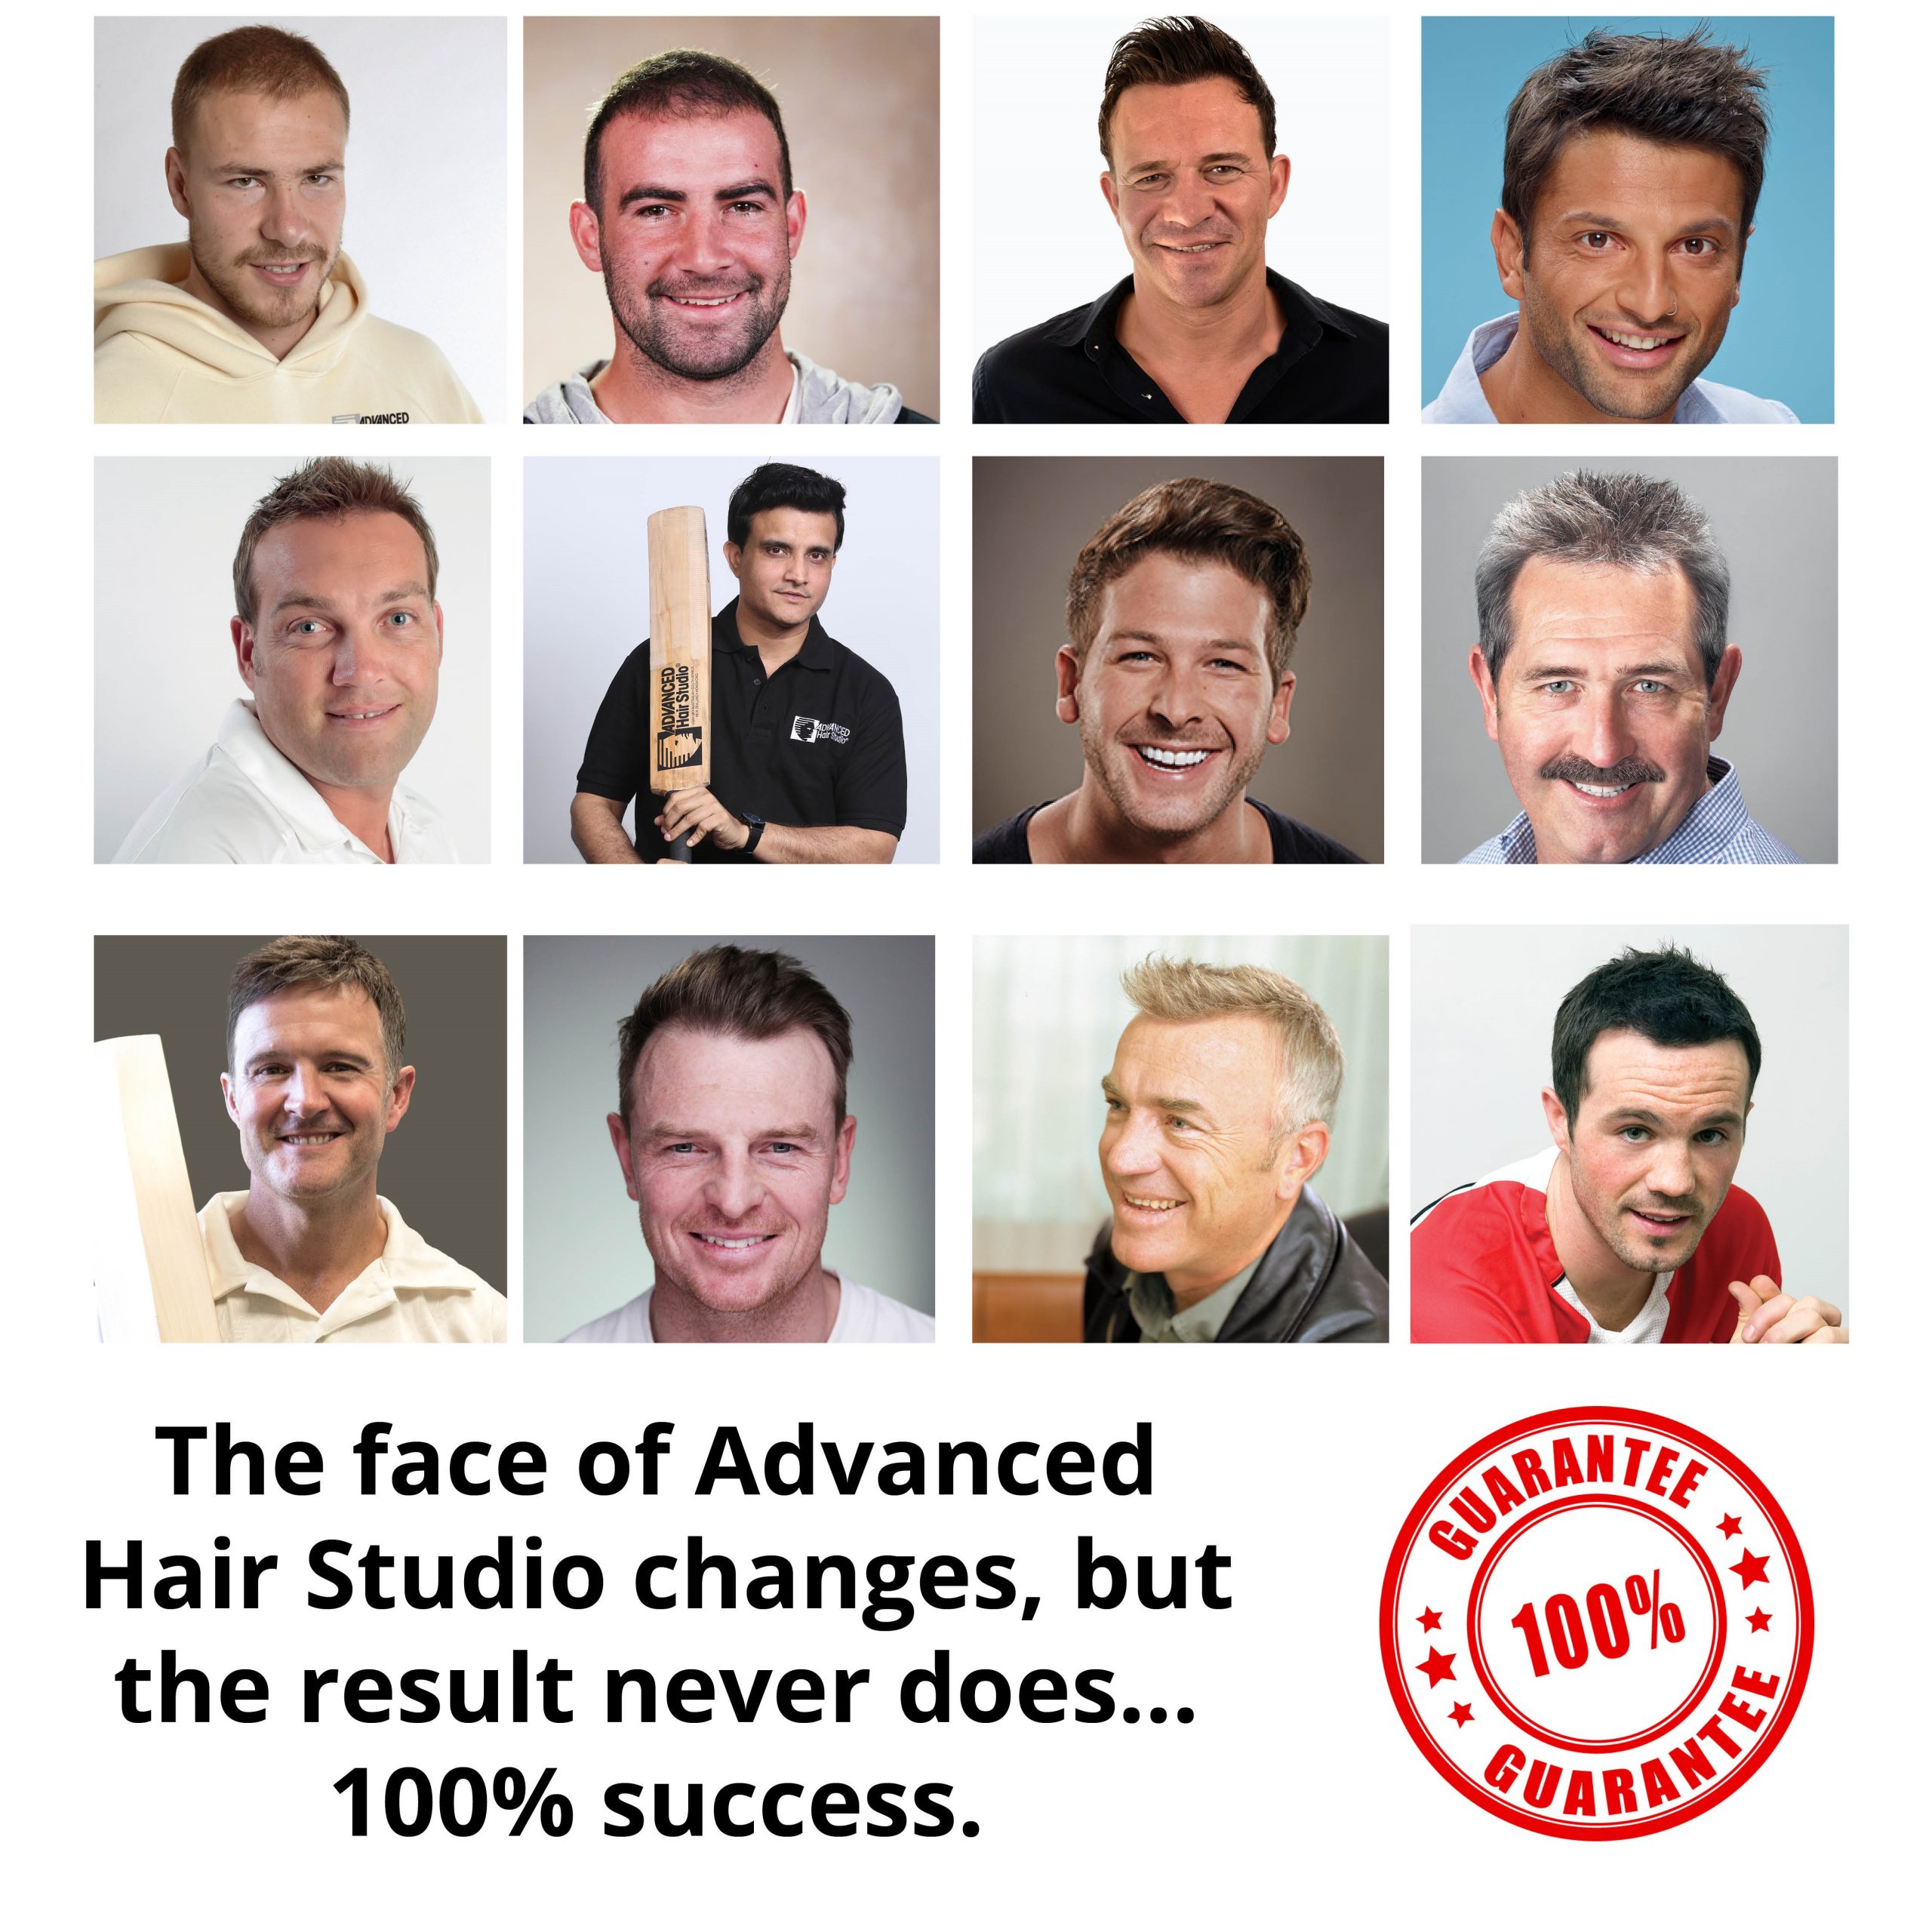 Advanced Hair Studio Shop - Hair Growth & Hair Loss Treatments